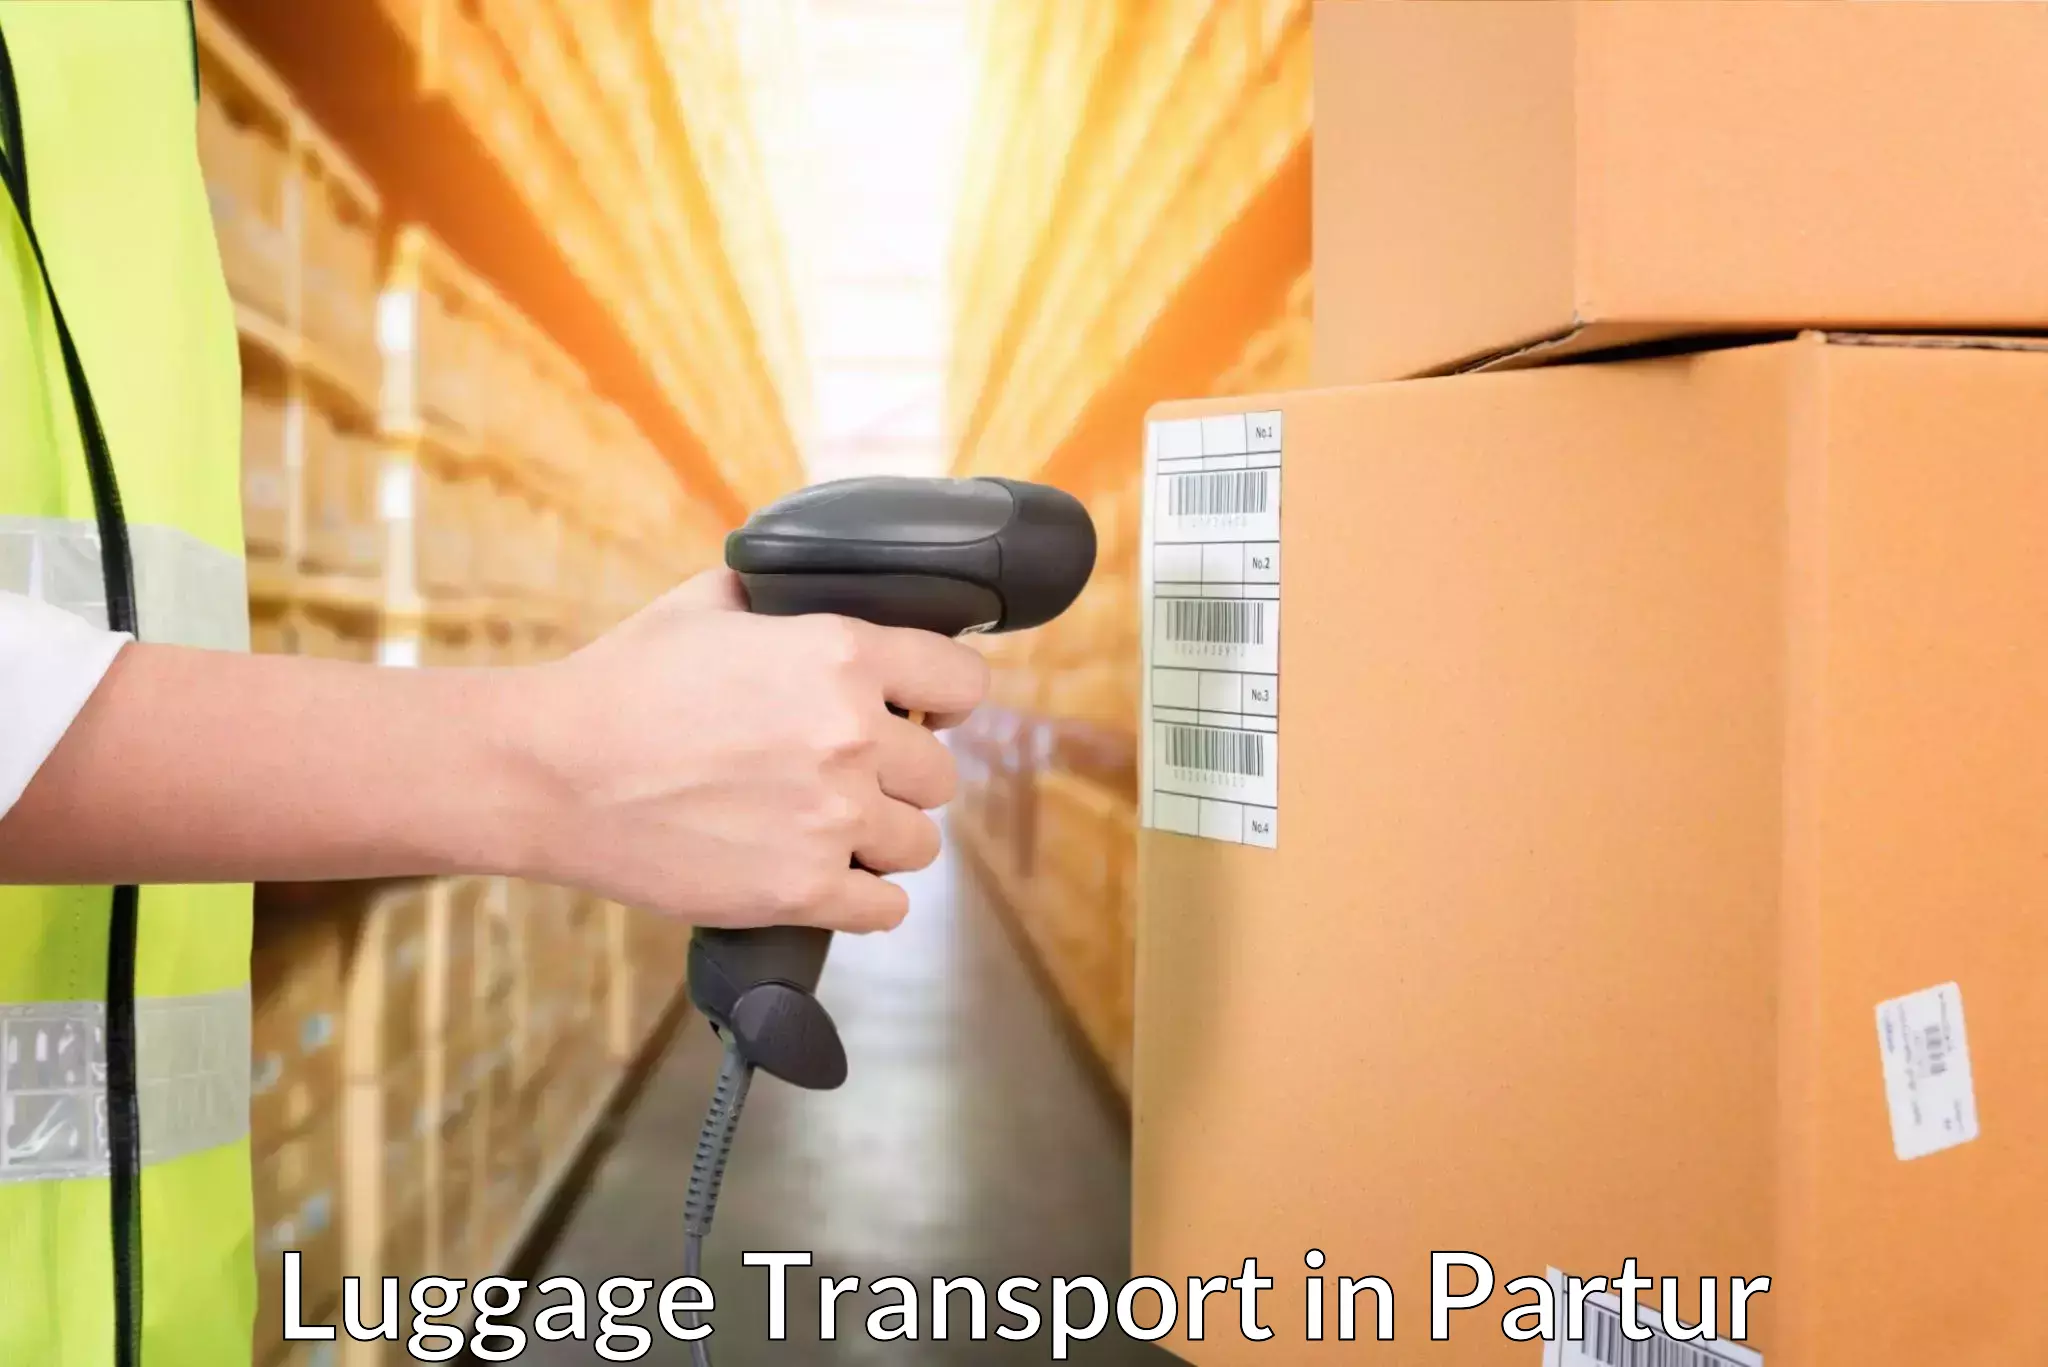 Baggage transport estimate in Partur